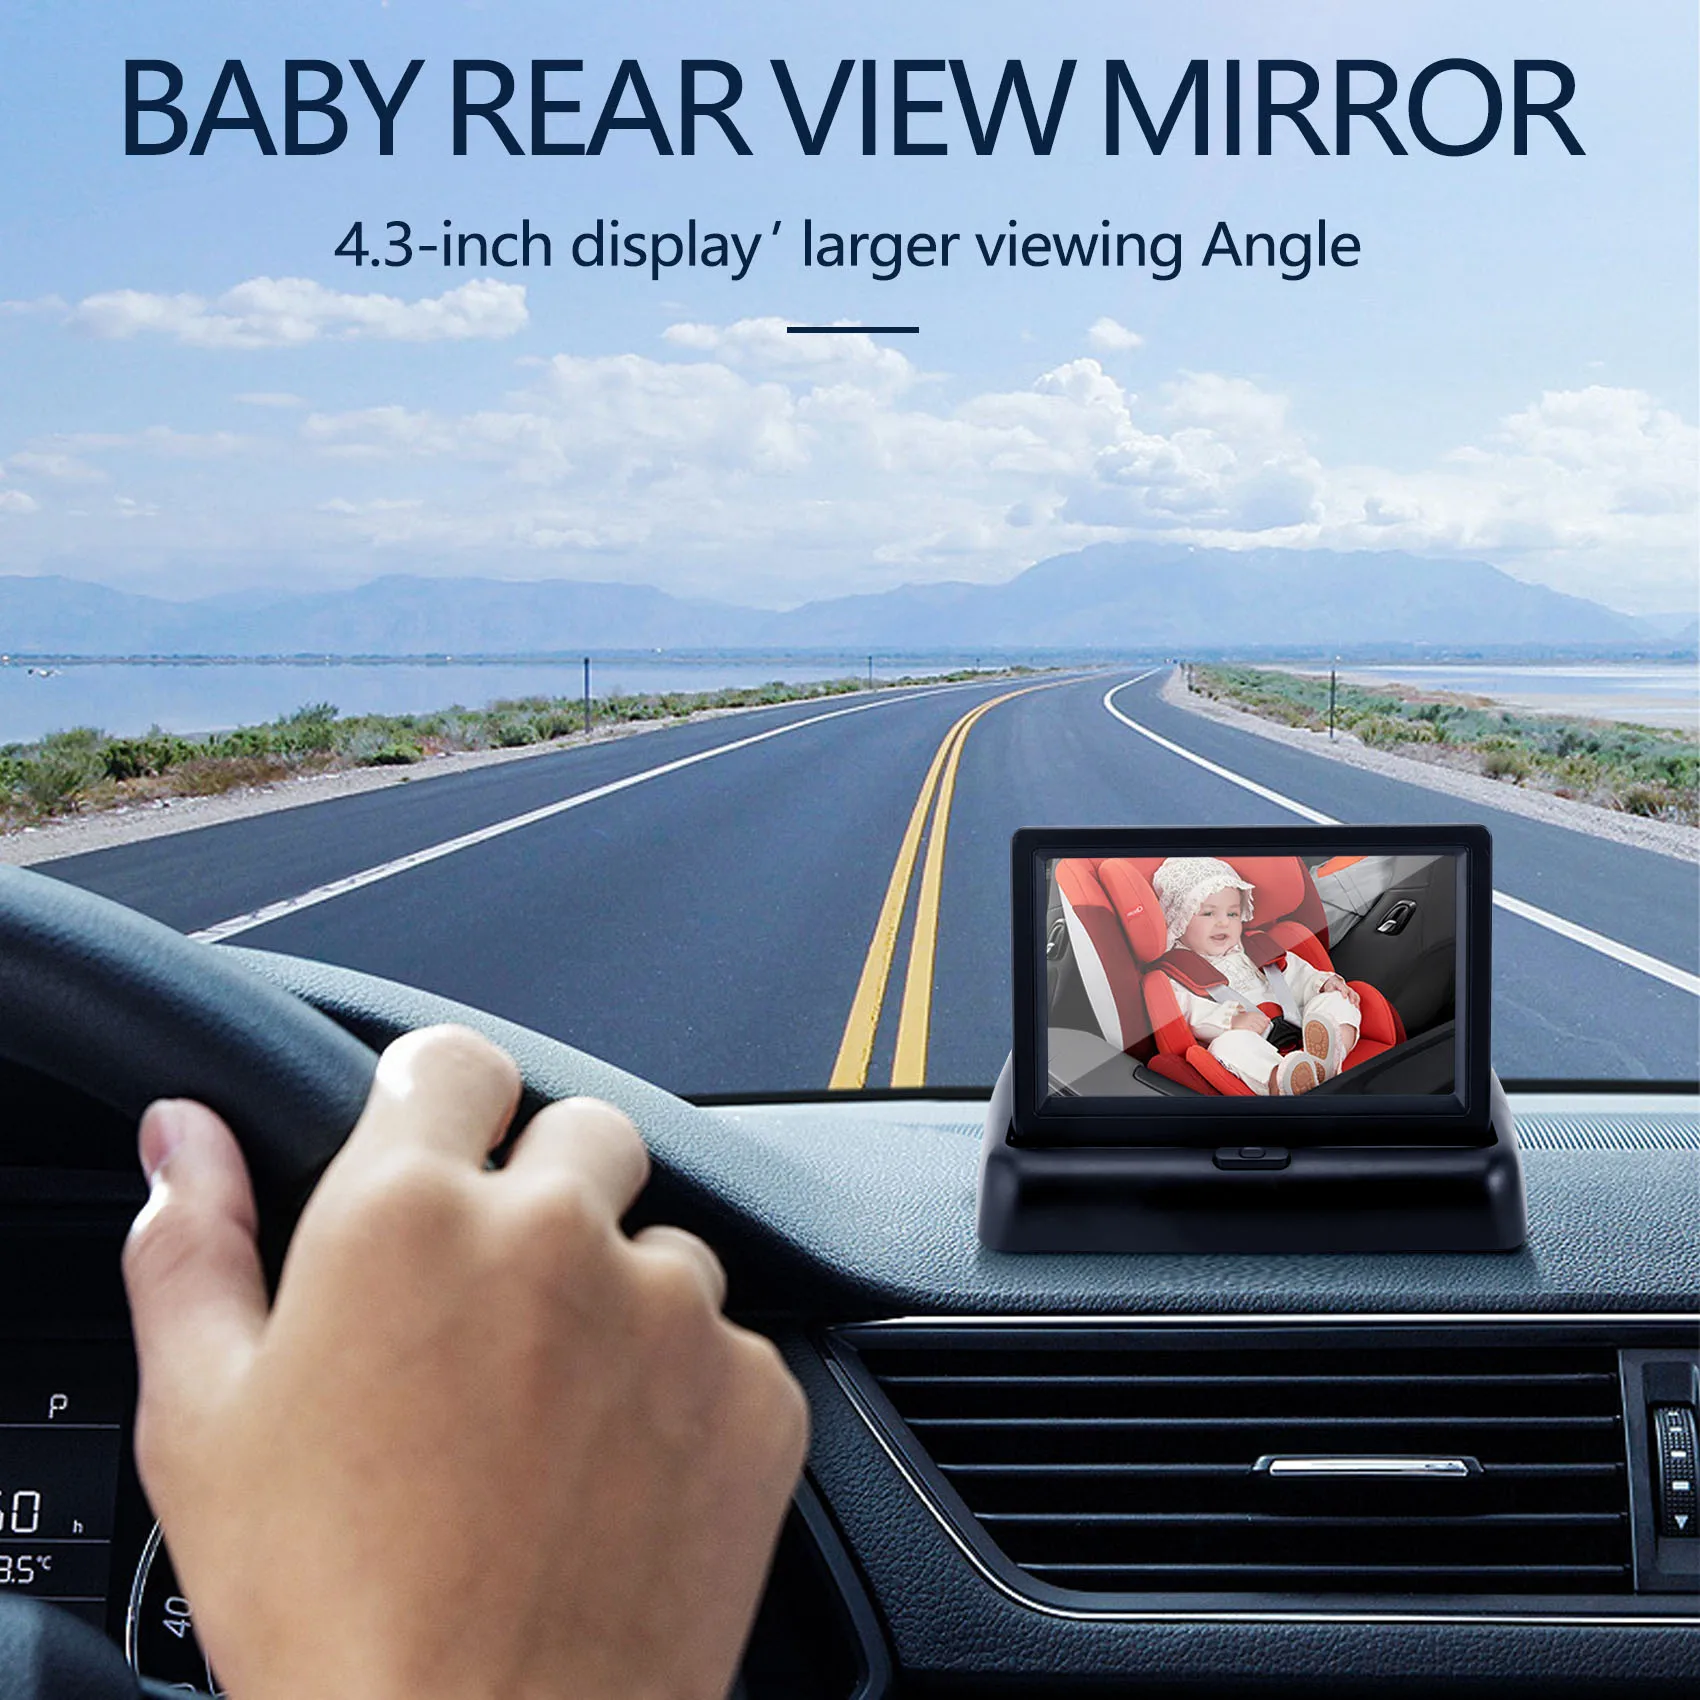  SBKDPT Espejo de coche para bebé, pantalla HD de 4.3 pulgadas, espejo  retrovisor de bebé, a prueba de golpes, visión nocturna ajustable de 360°,  espejo de bebé para gemelos para asiento